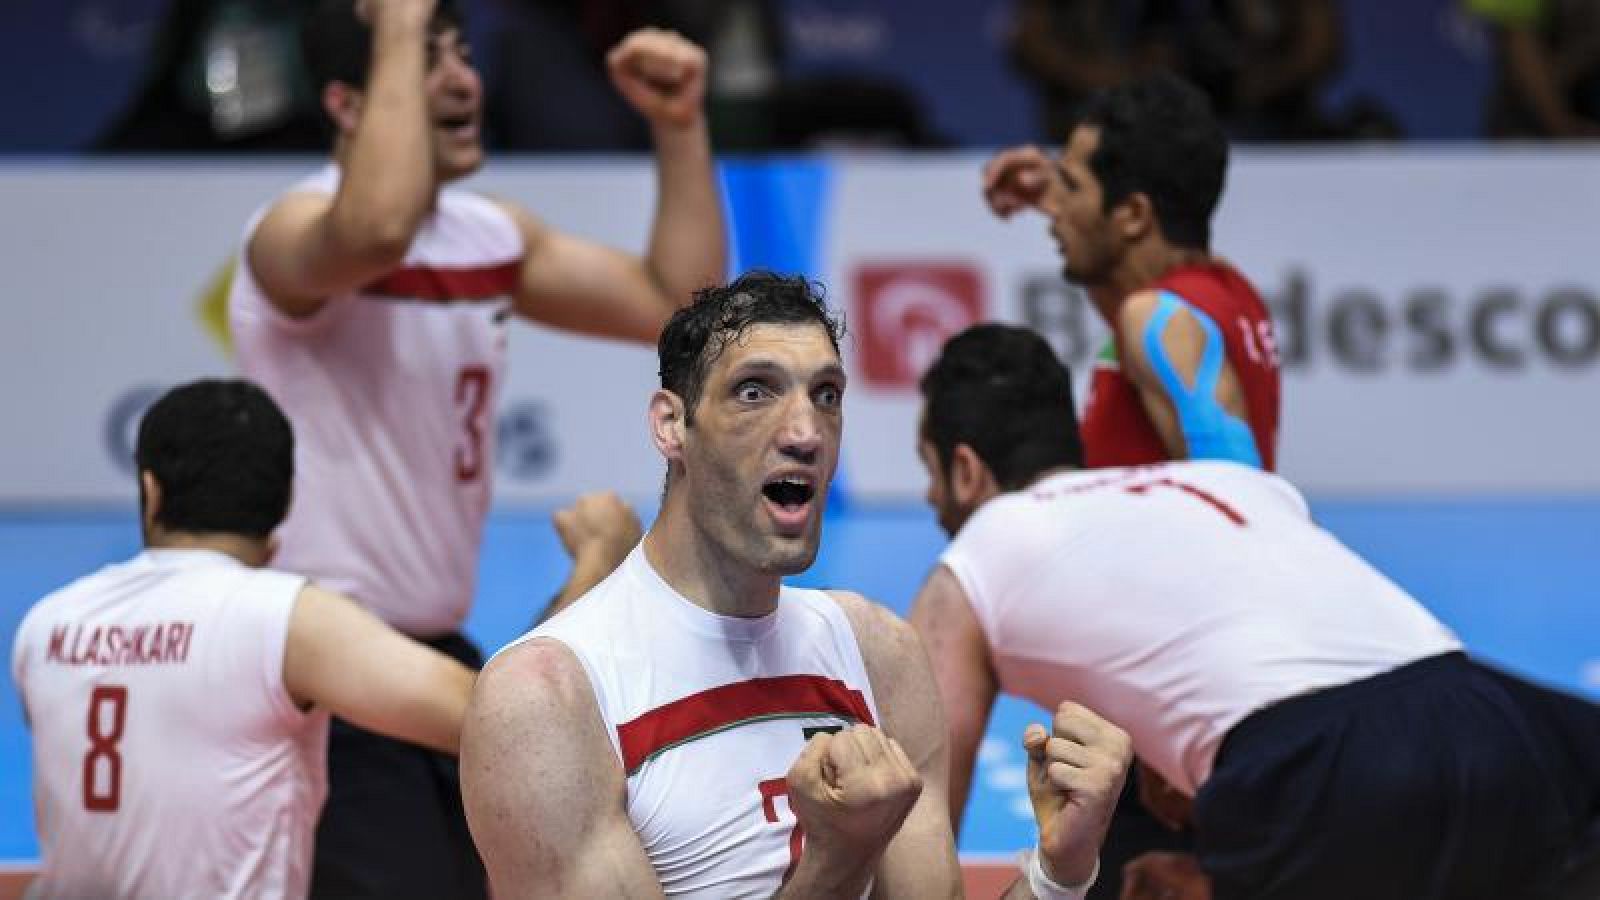 El jugador de voleybol Morteza Mehrzad festejando un triunfo